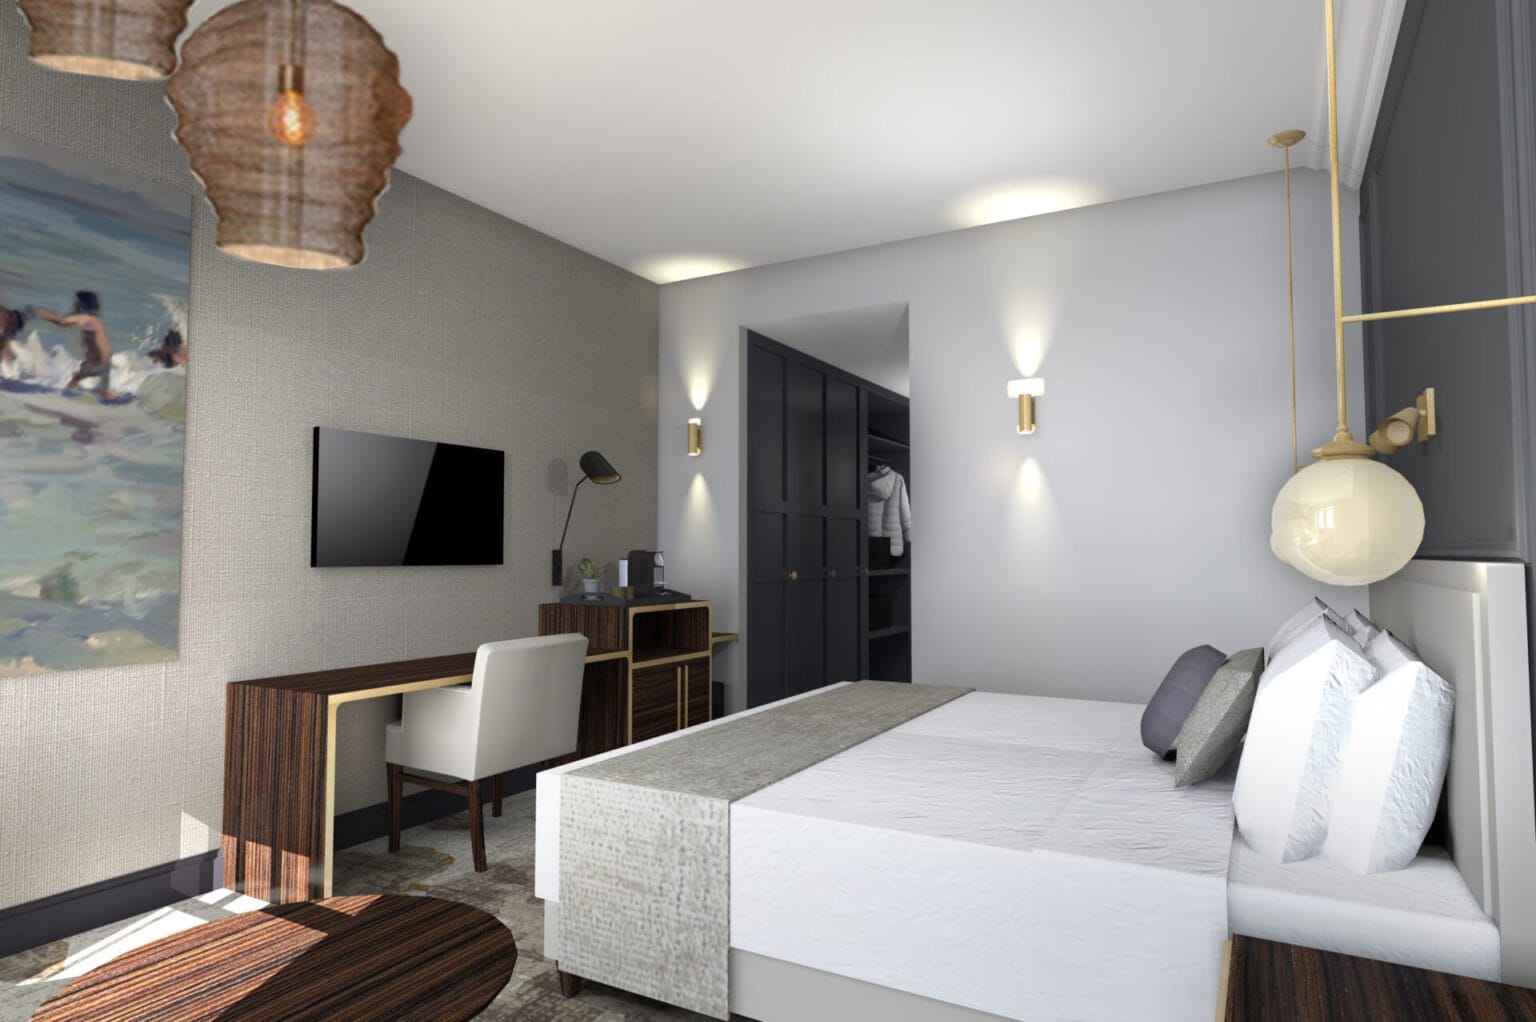 GlobalFacilities ontwerp hotelkamer met inbouwkastenwand donker grijs maatwerk